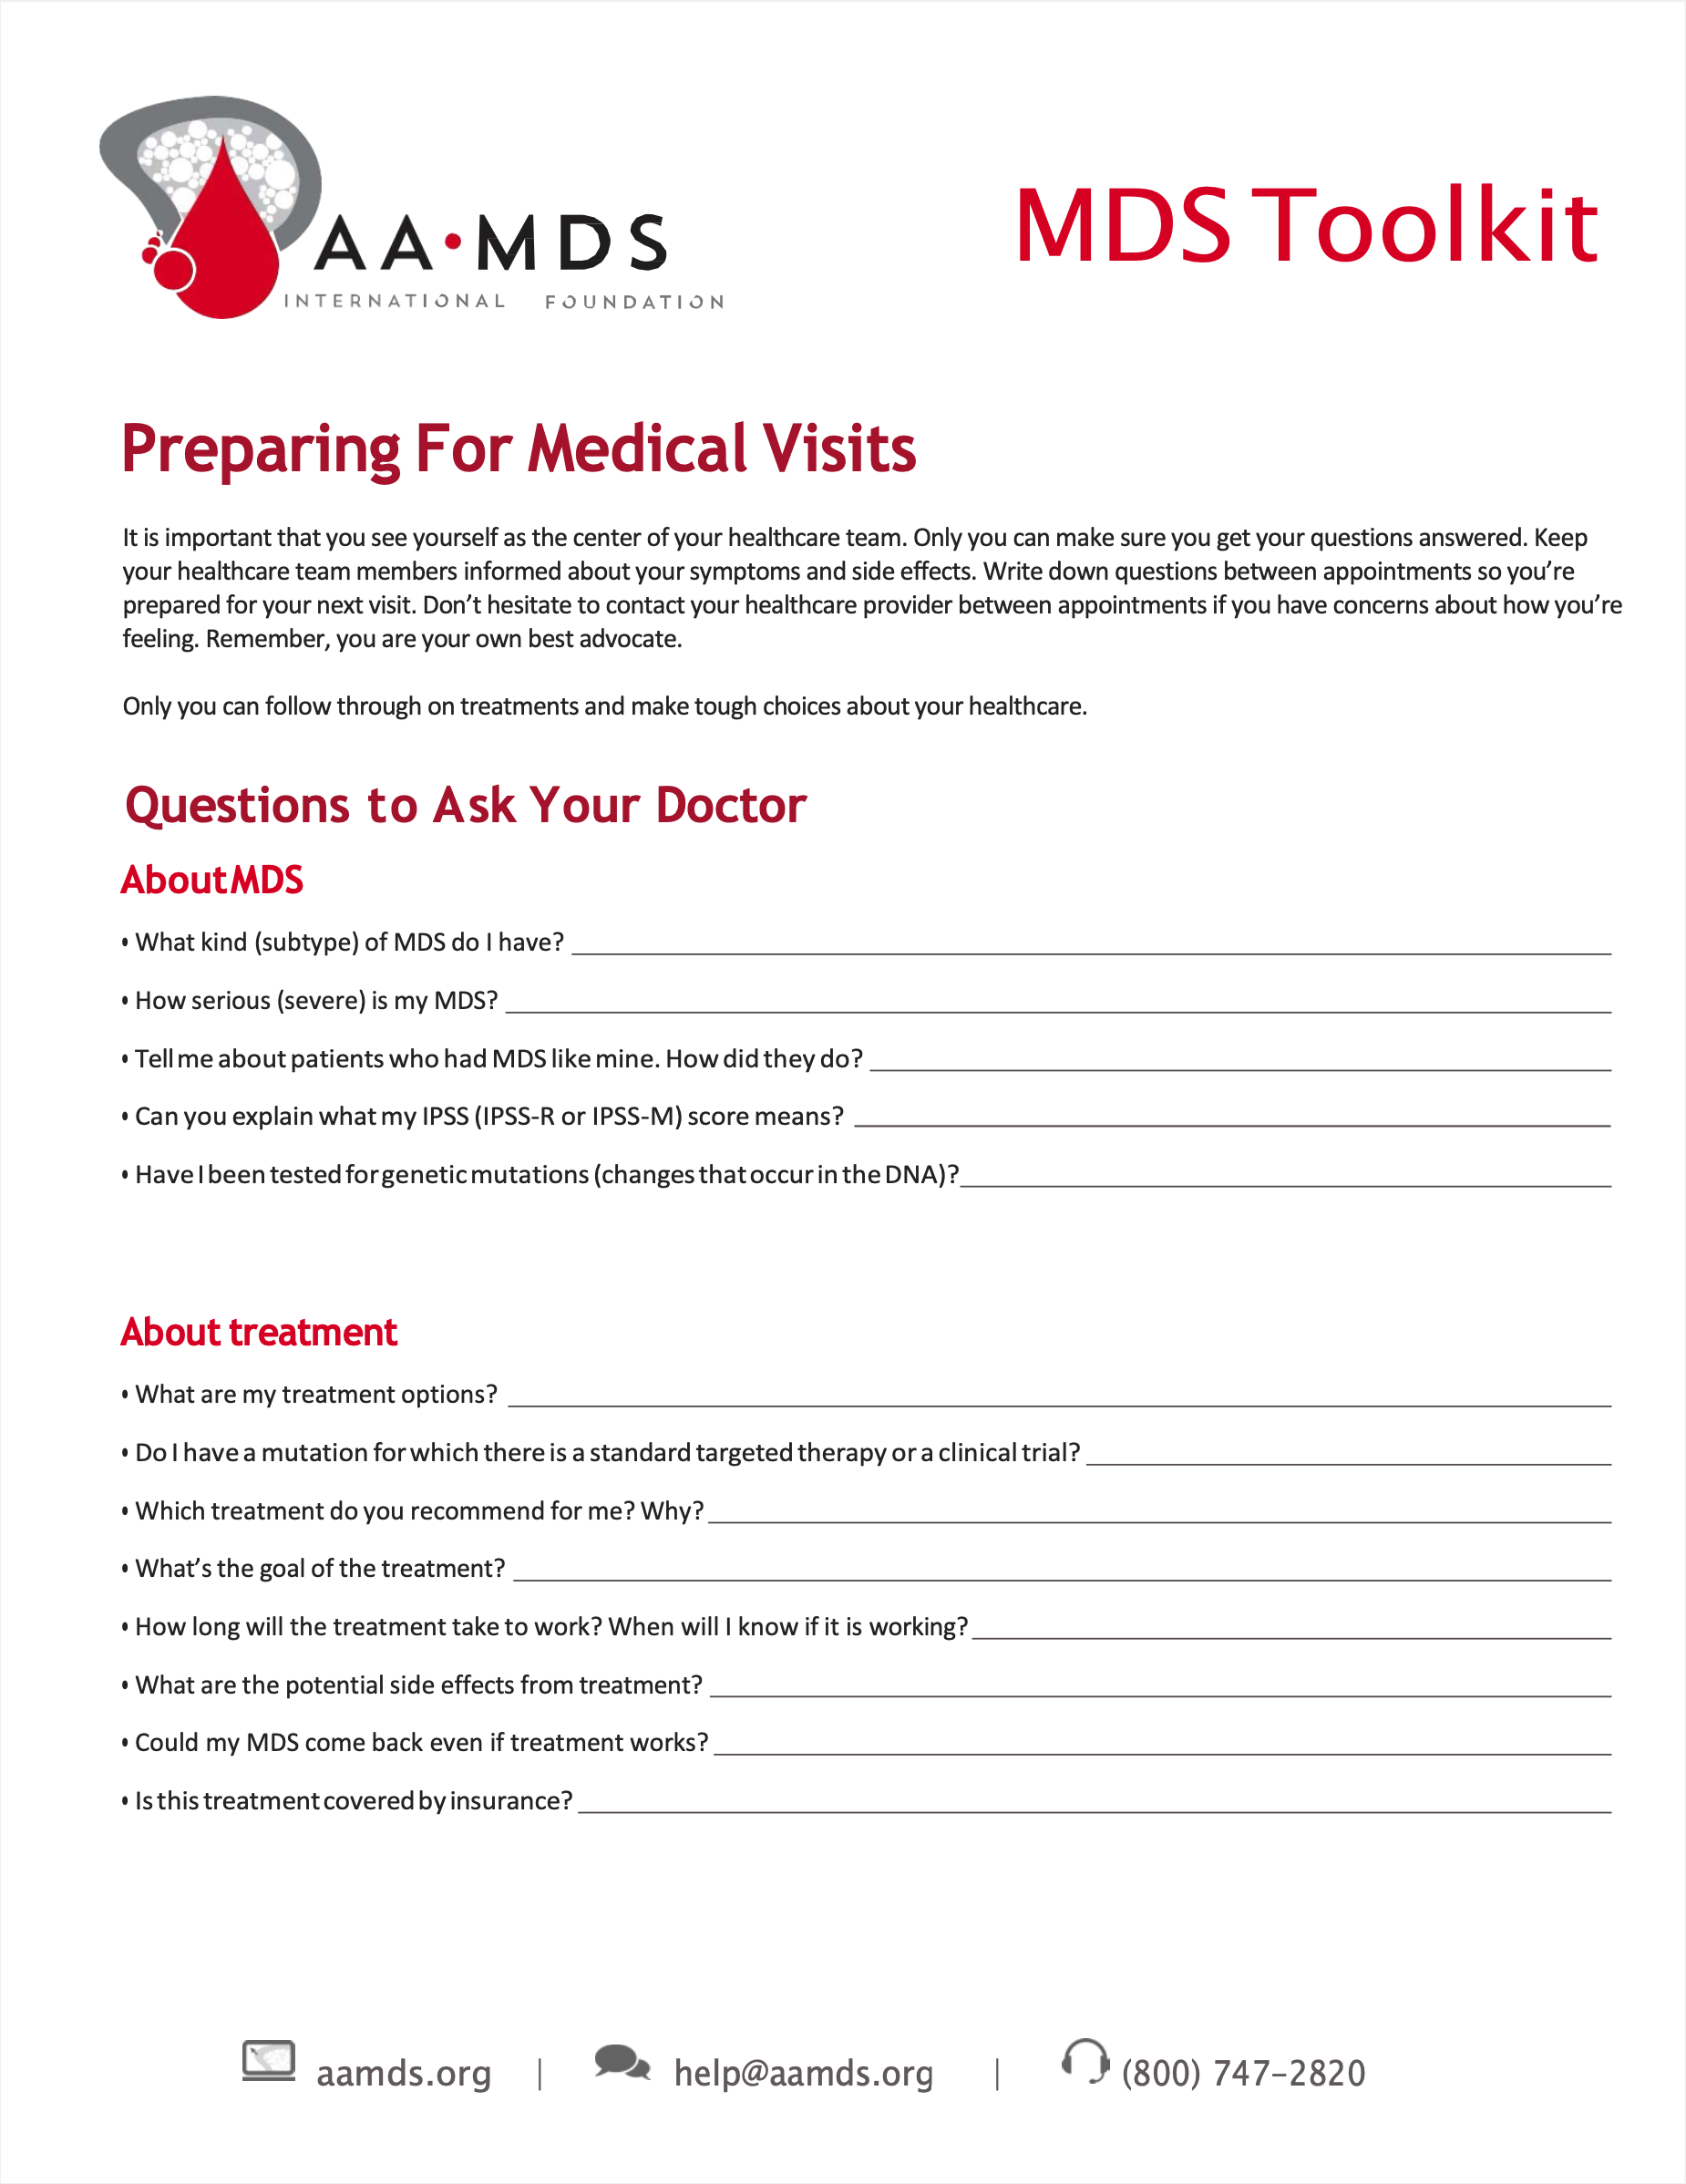 MDS Toolkit - Preparing for Medical Visits (Thumbnail)